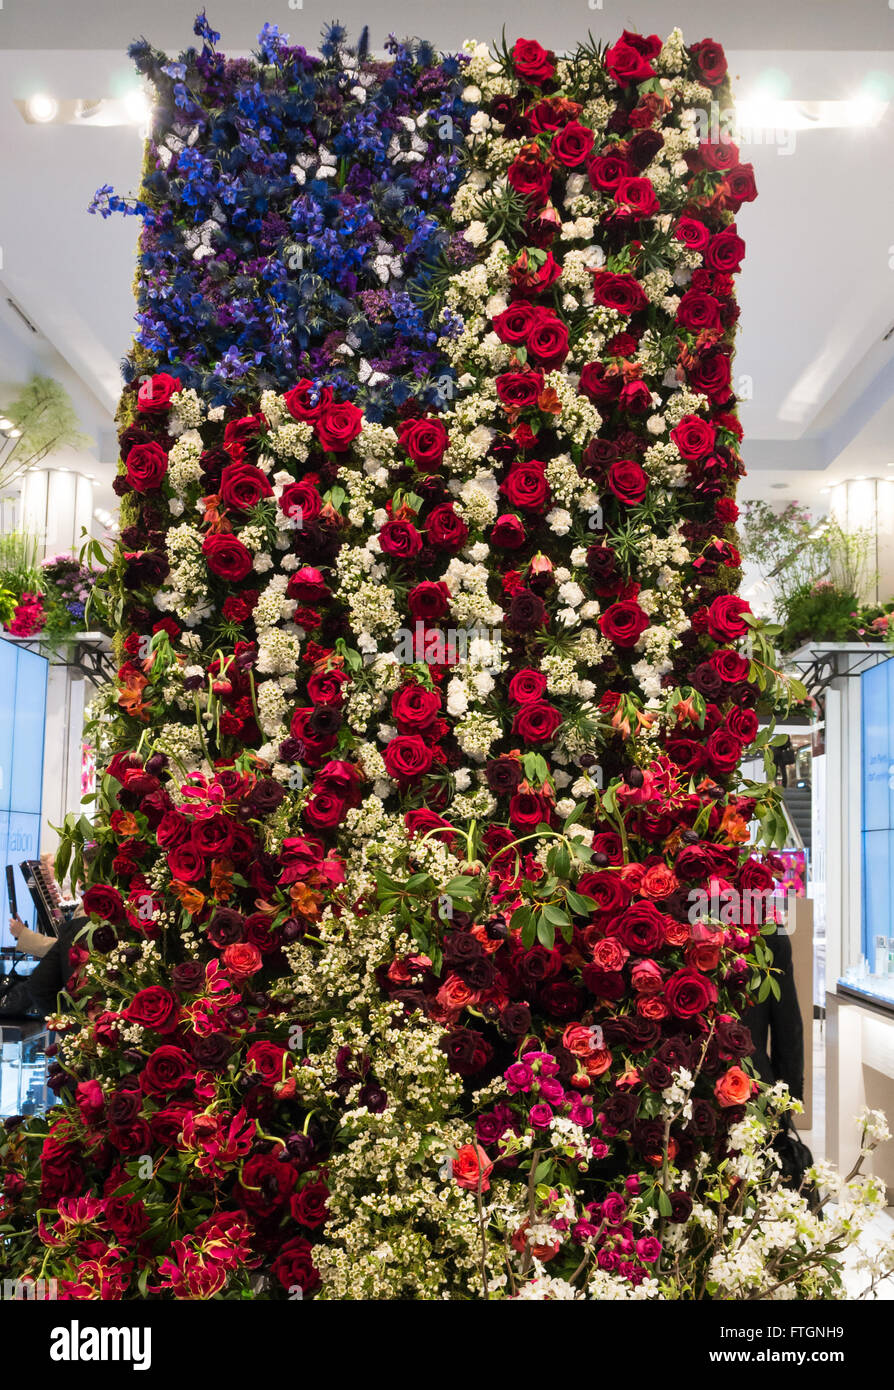 Macy's Flower Show annuel : le drapeau américain composé de roses et d'autres rouge, blanc et bleu de fleurs. Banque D'Images